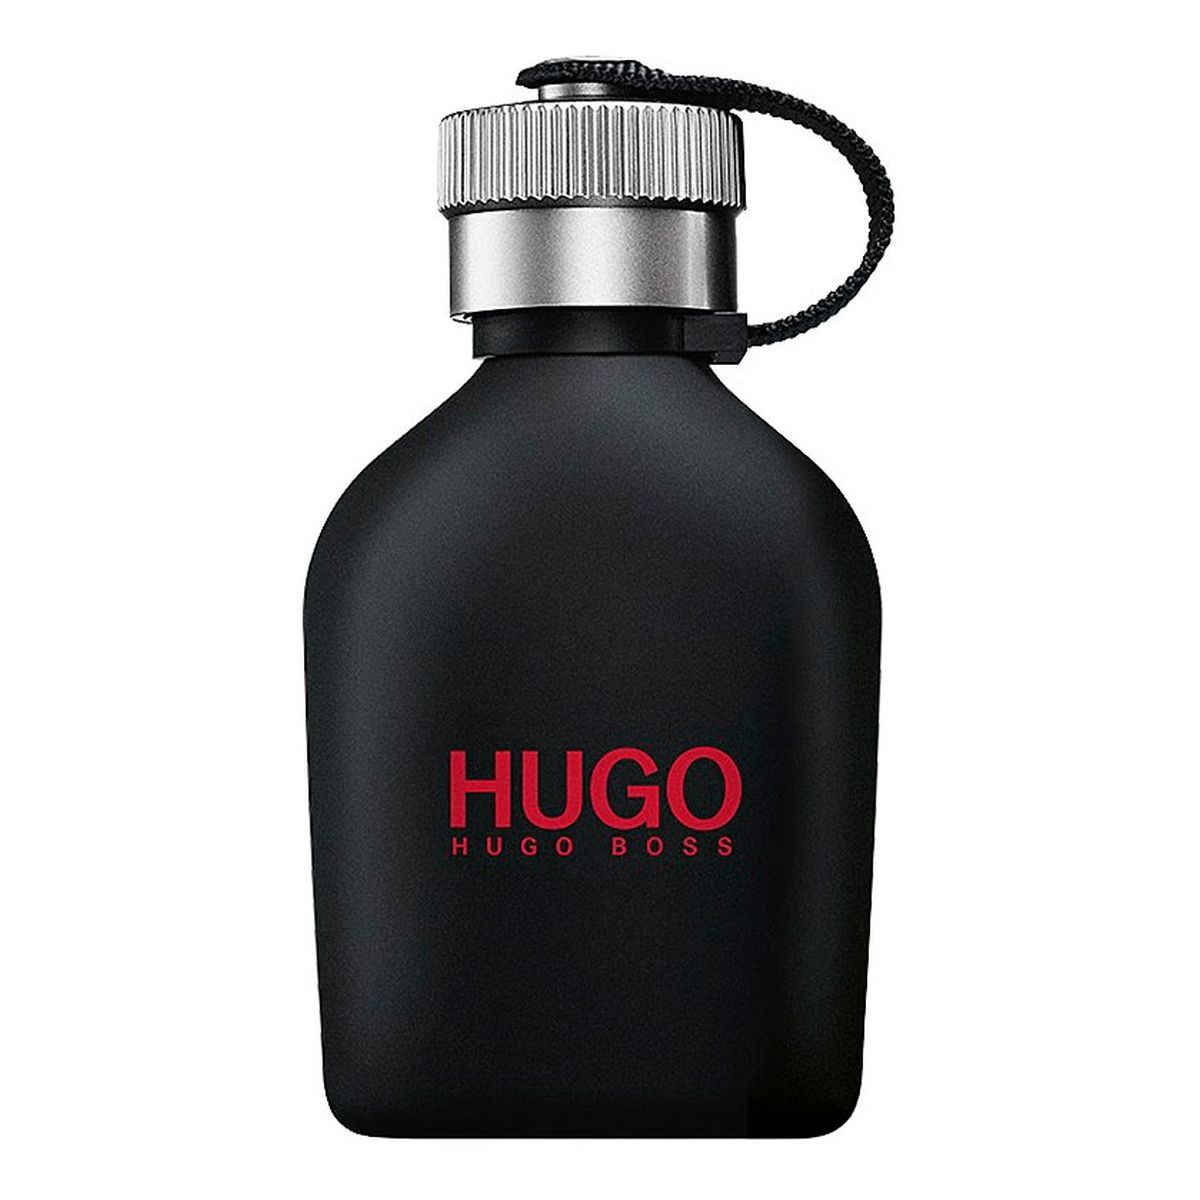 Hugo Boss Hugo Just Different Woda toaletowa spray 75ml